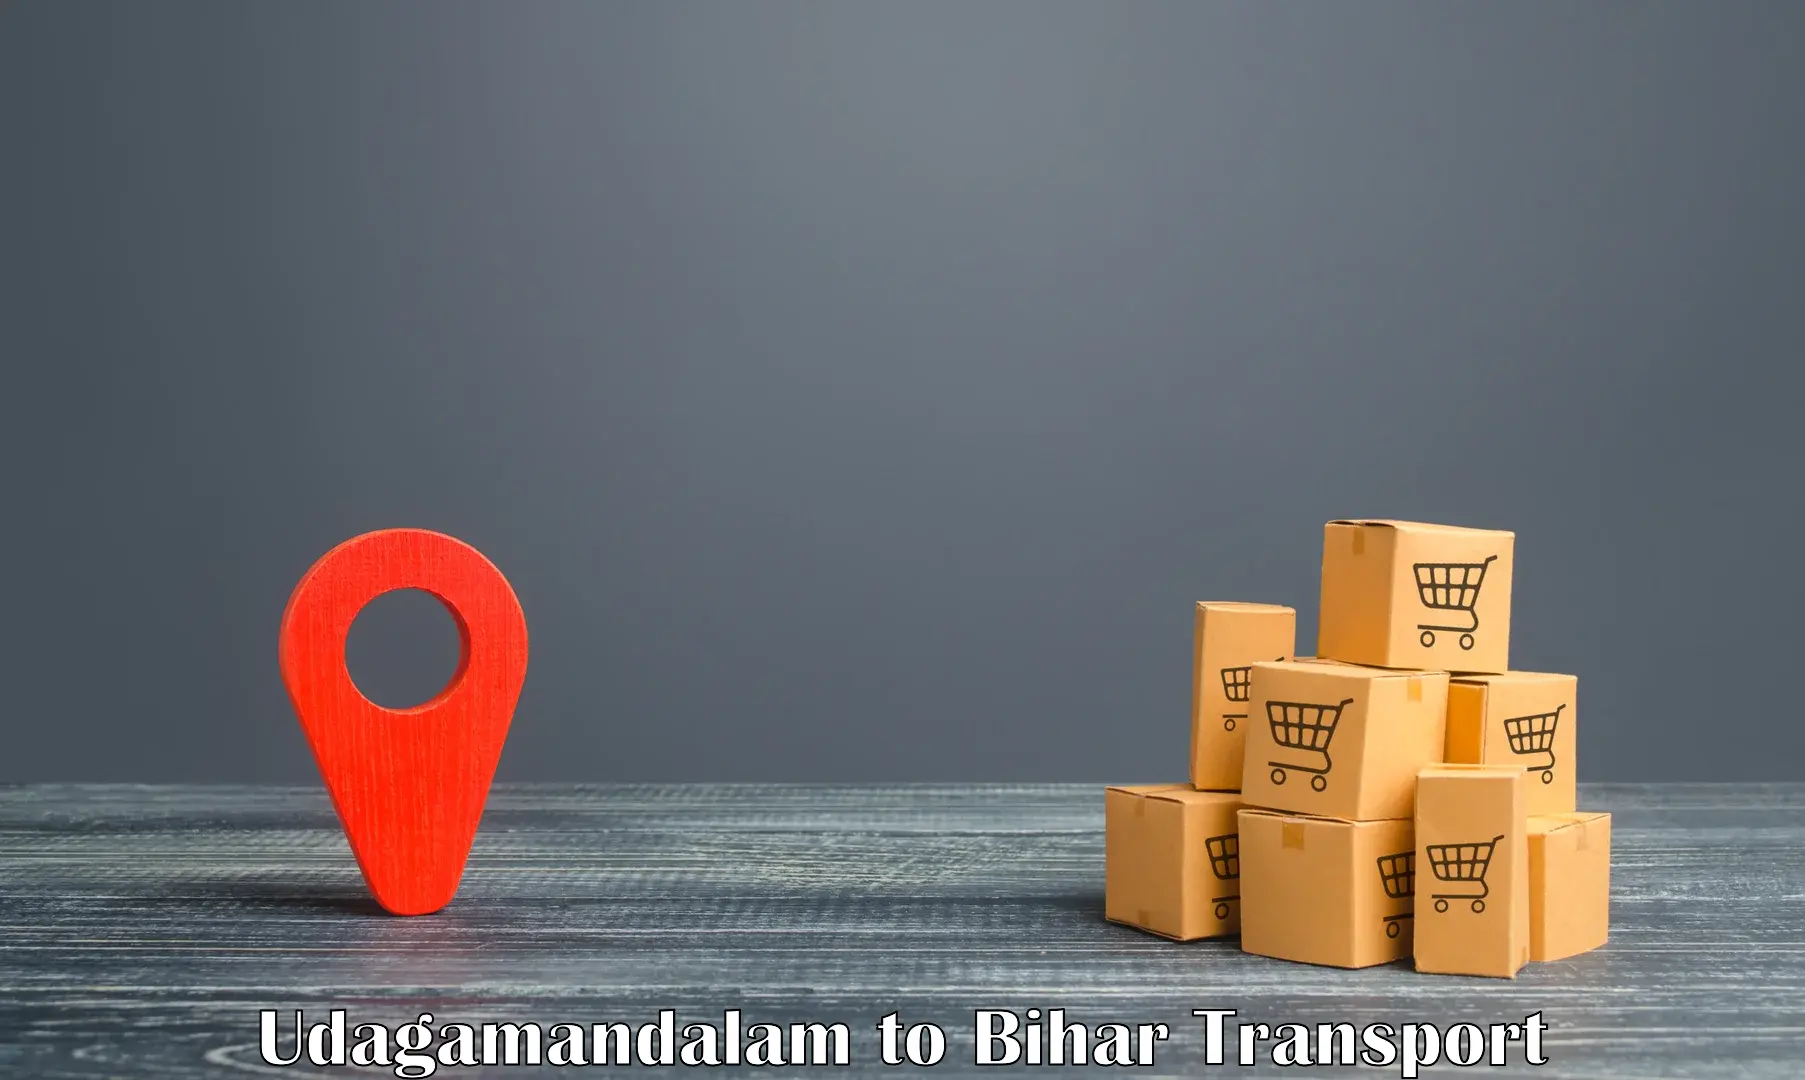 Container transport service Udagamandalam to Bhojpur